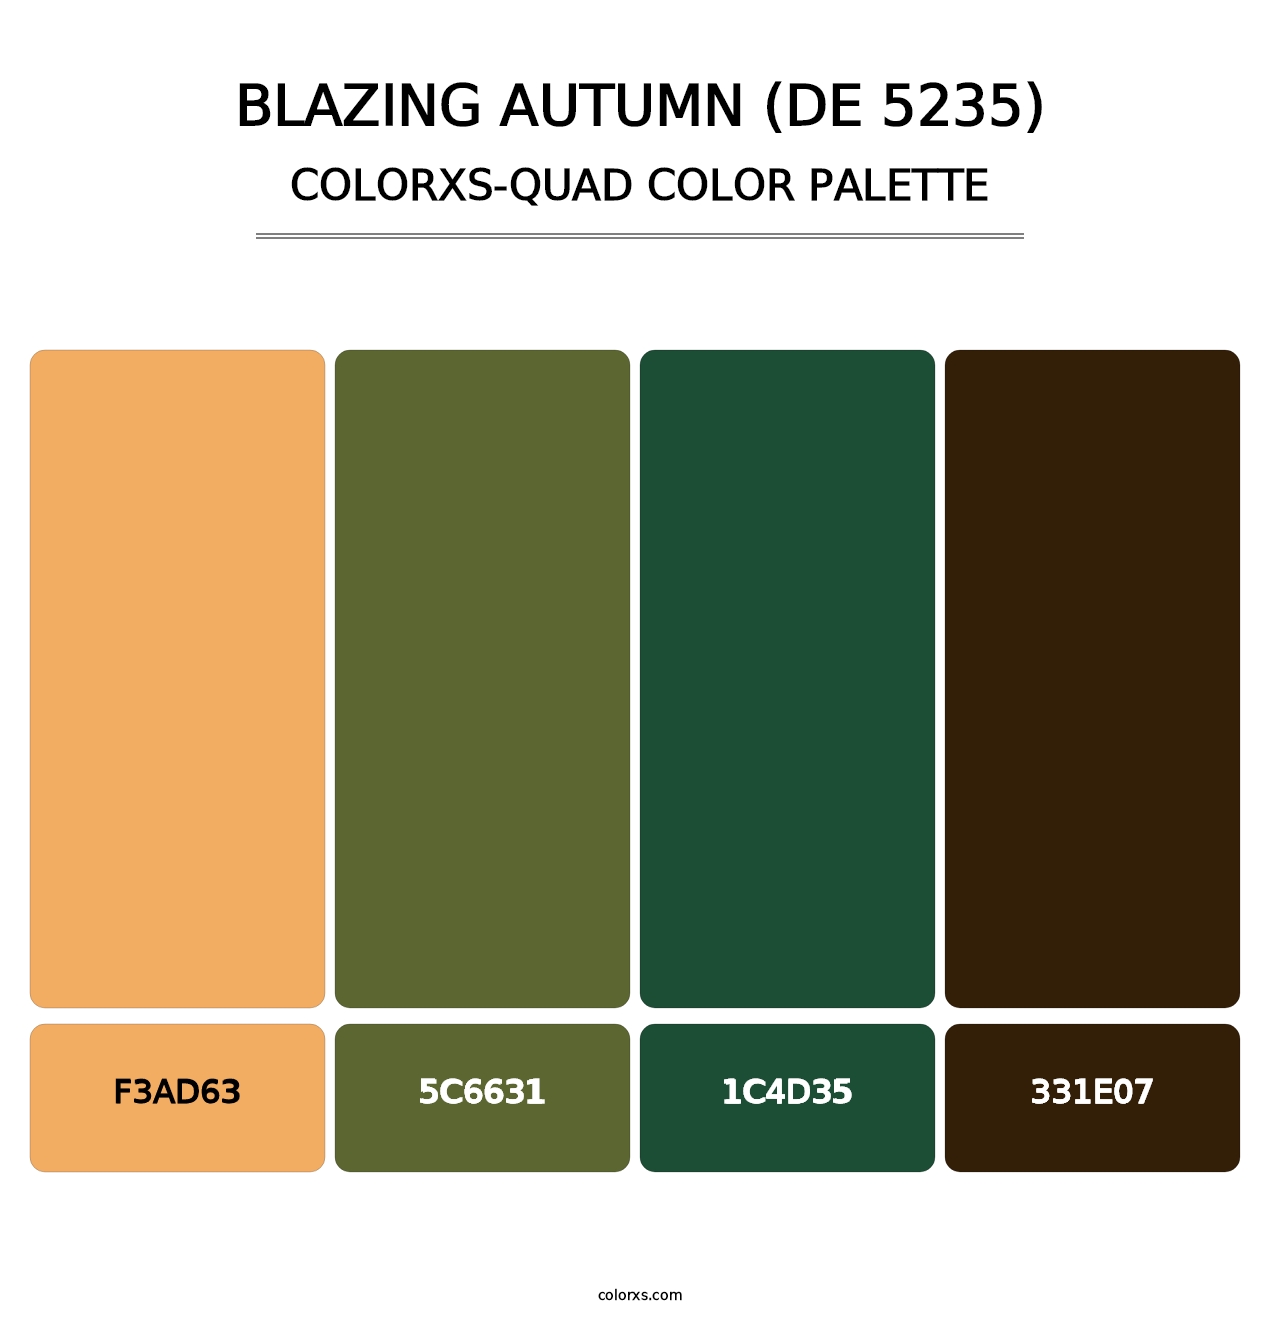 Blazing Autumn (DE 5235) - Colorxs Quad Palette